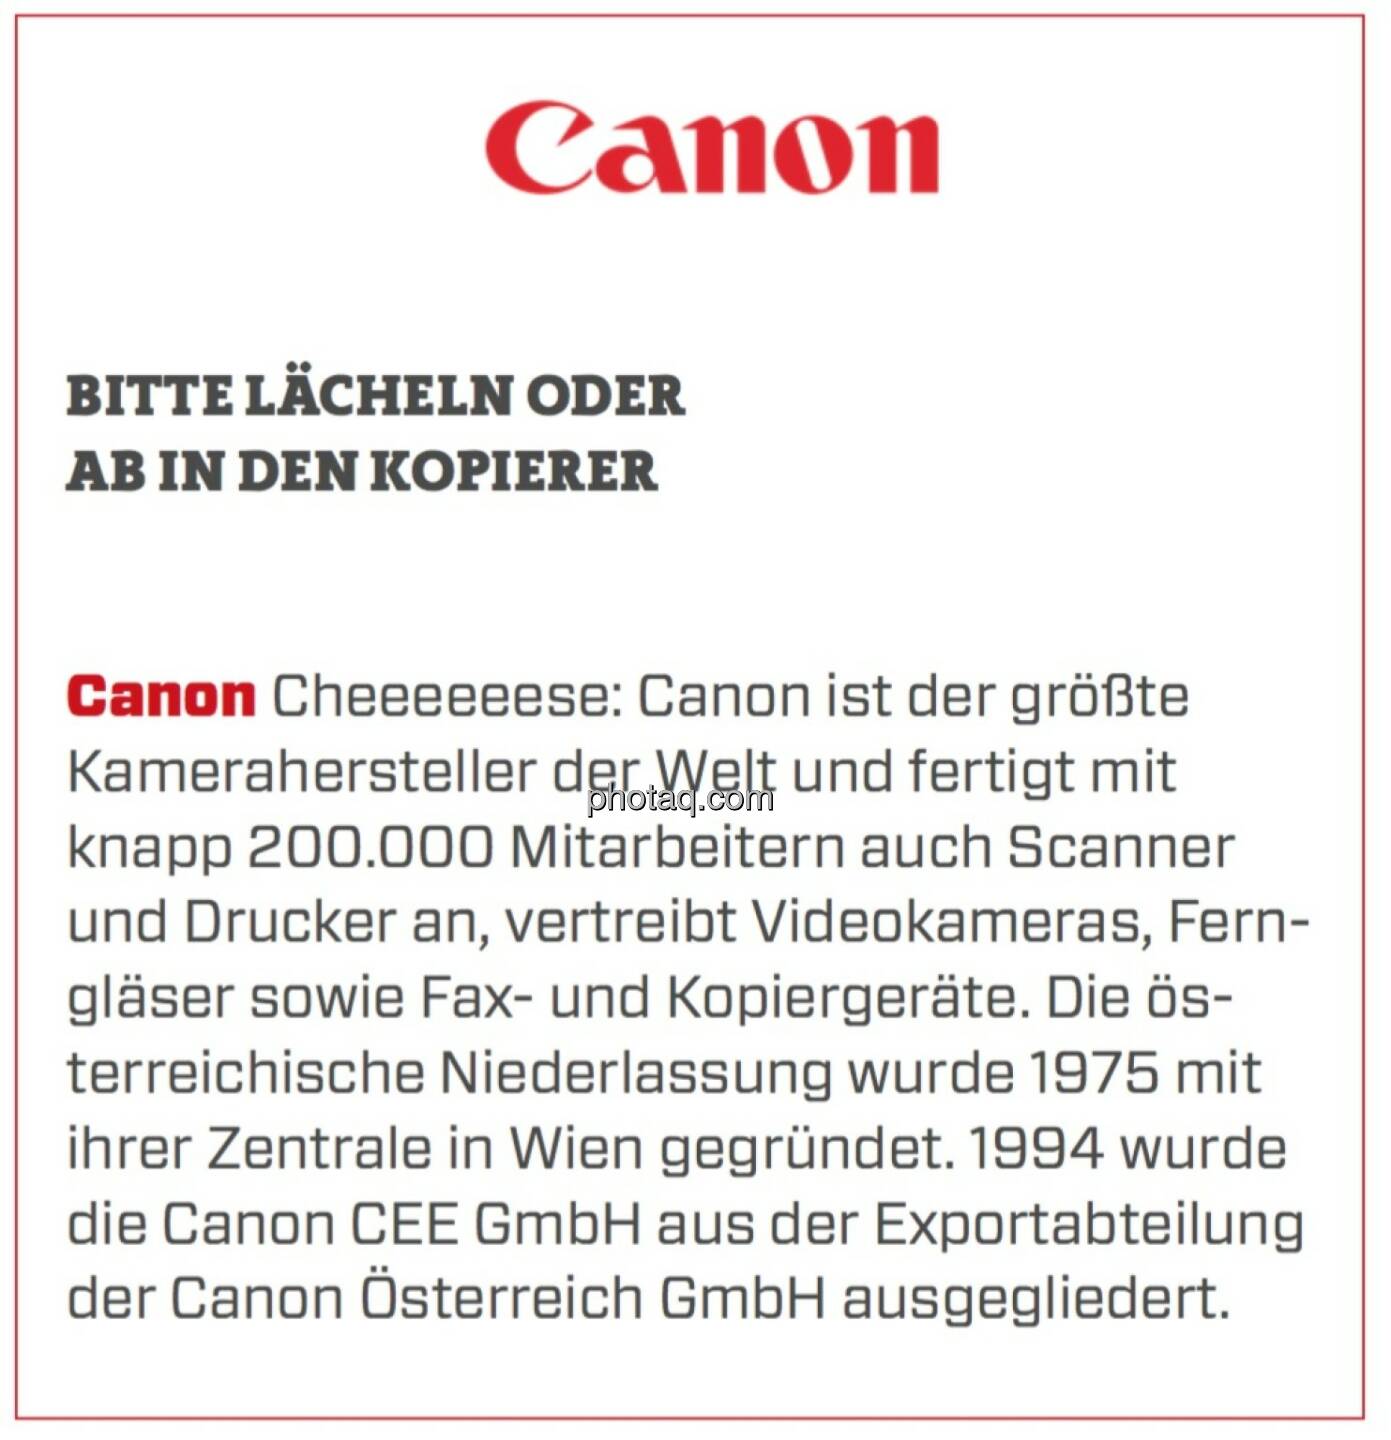 Canon - Bitte lächeln oder ab in den Kopierer: Cheeeeeese: Canon ist der größte Kamerahersteller der Welt und fertigt mit knapp 200.000 Mitarbeitern auch Scanner und Drucker an, vertreibt Videokameras, Ferngläser sowie Fax- und Kopiergeräte. Die österreichische Niederlassung wurde 1975 mit ihrer Zentrale in Wien gegründet. 1994 wurde die Canon CEE GmbH aus der Exportabteilung der Canon Österreich GmbH ausgegliedert. 